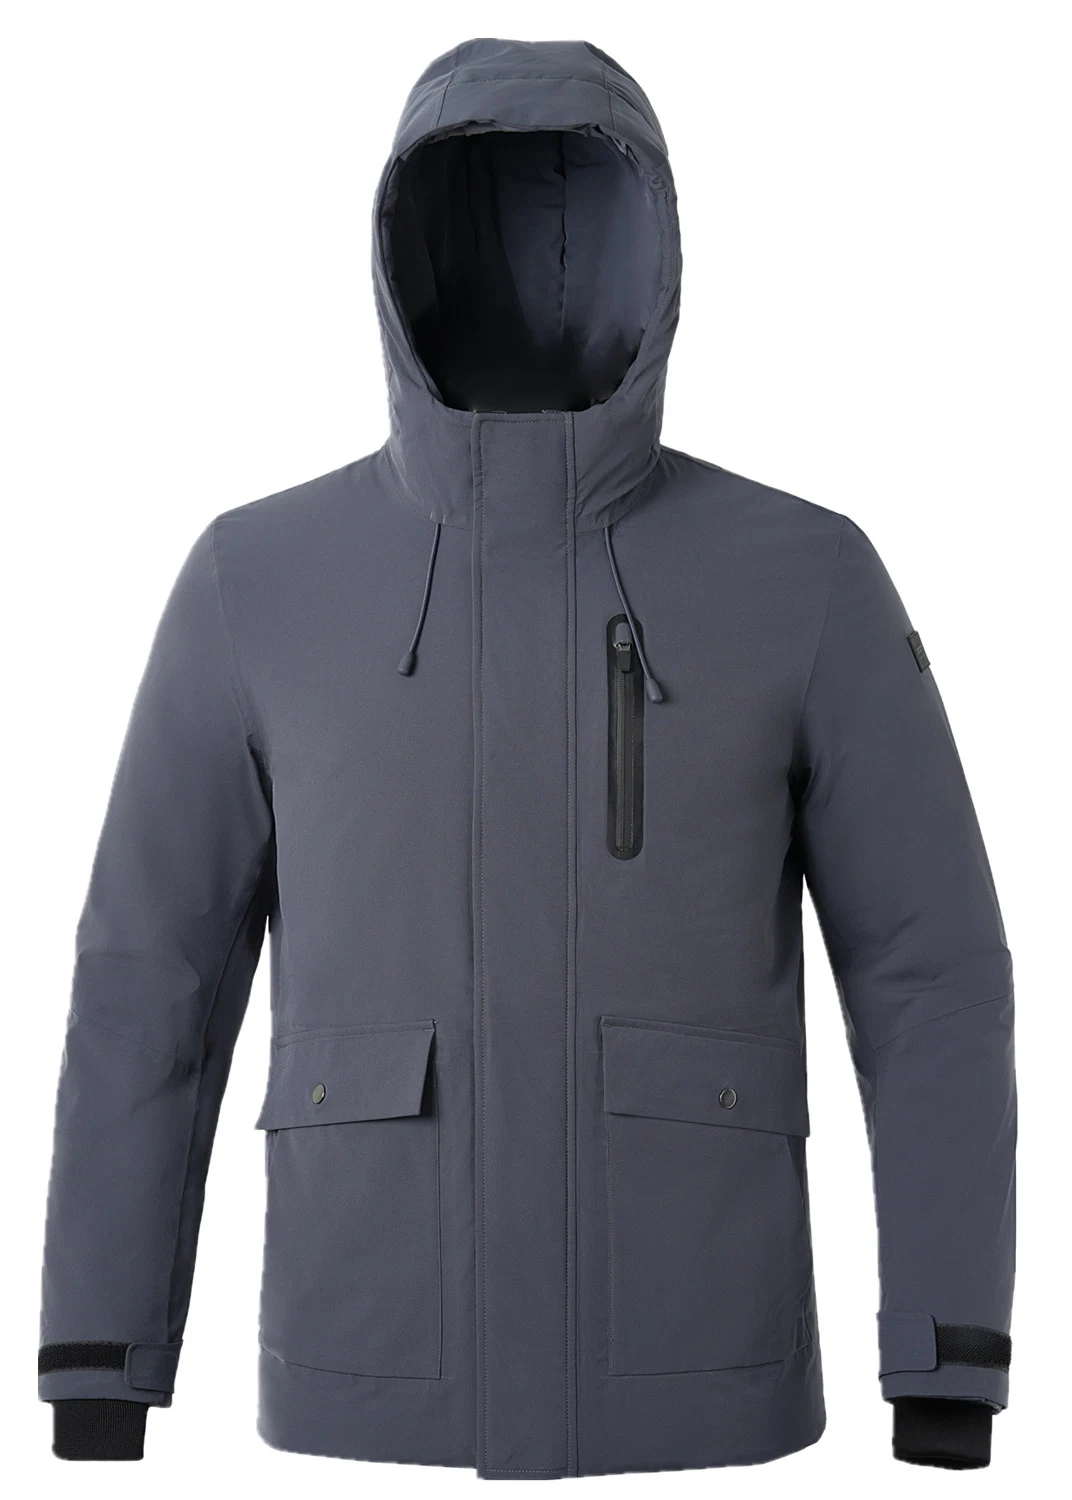 New Softshell Jacket Custom Design Winter Work Wear Men's Windproof Waterproof Fleece Lined Zip up Soft Shell Jacket